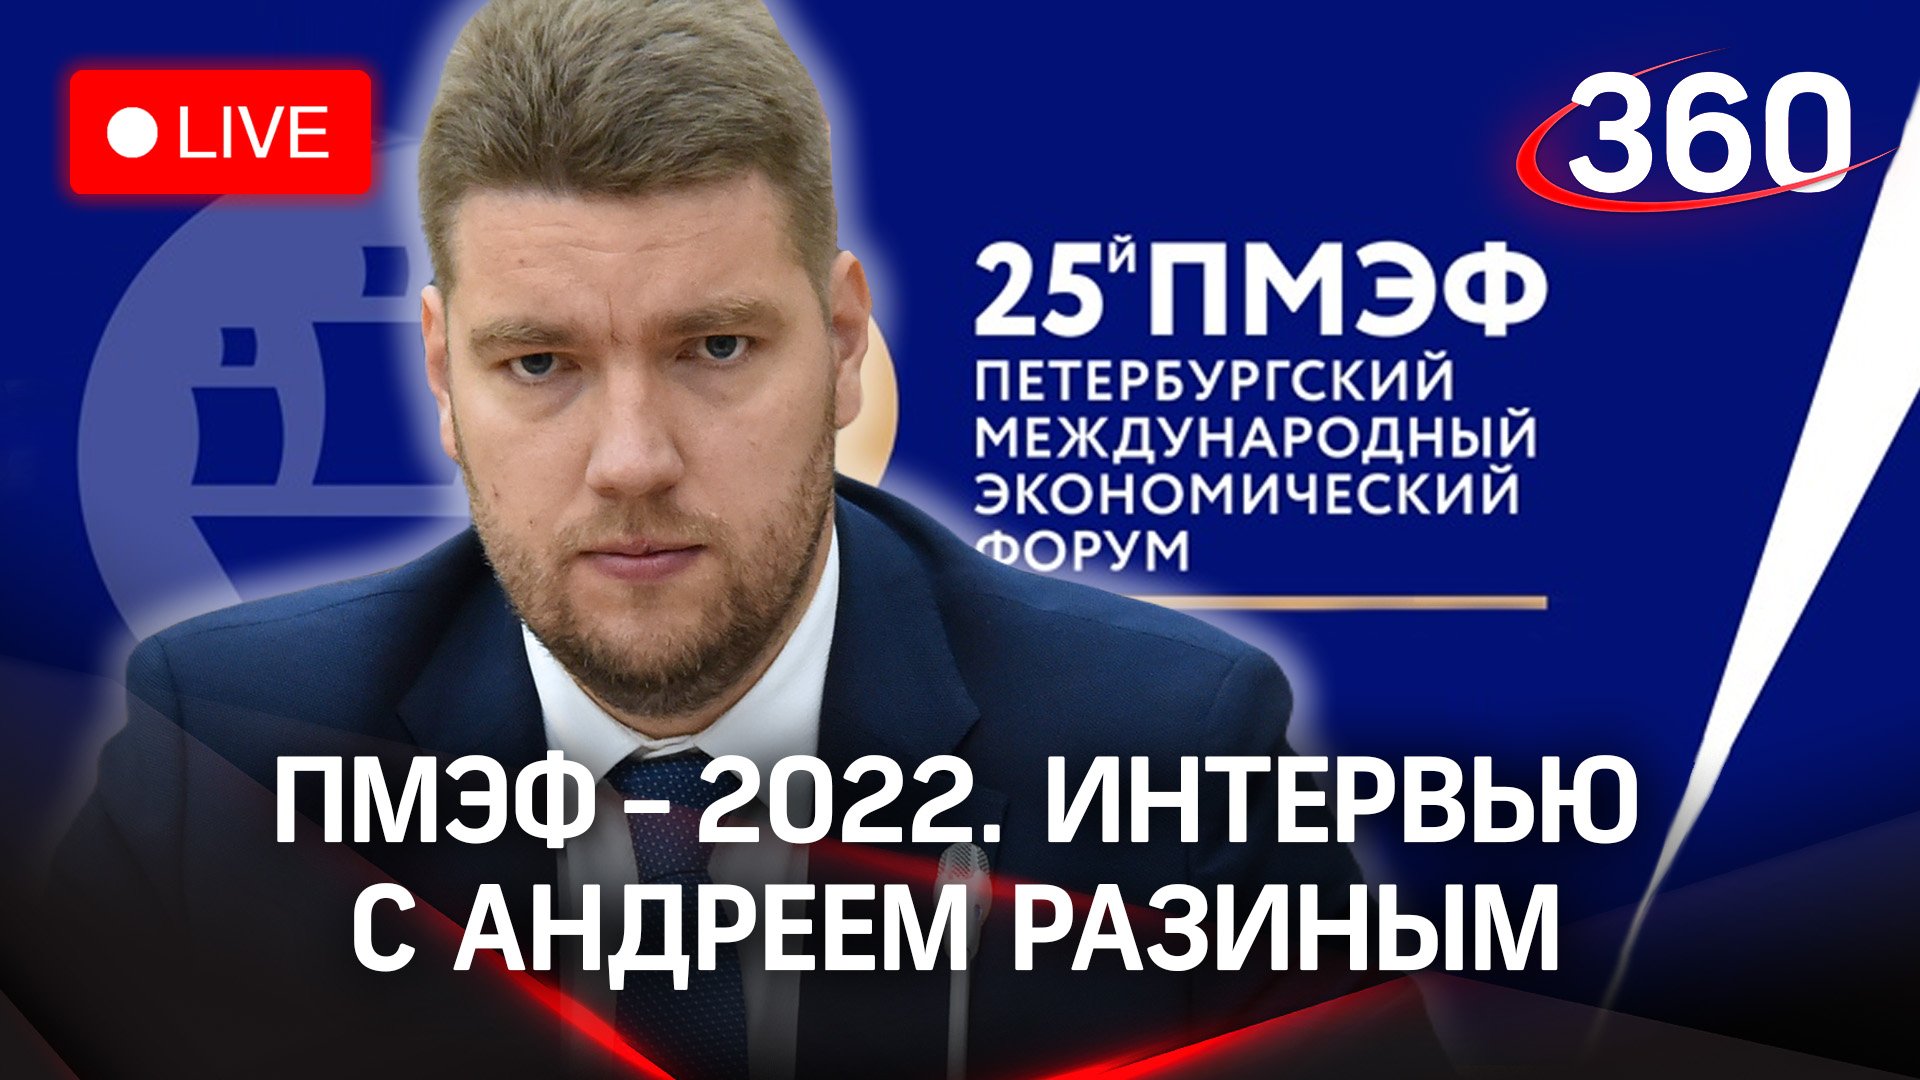 ПМЭФ-2022: интервью с Андреем Разиным, заместителем министра сельского хозяйства РФ